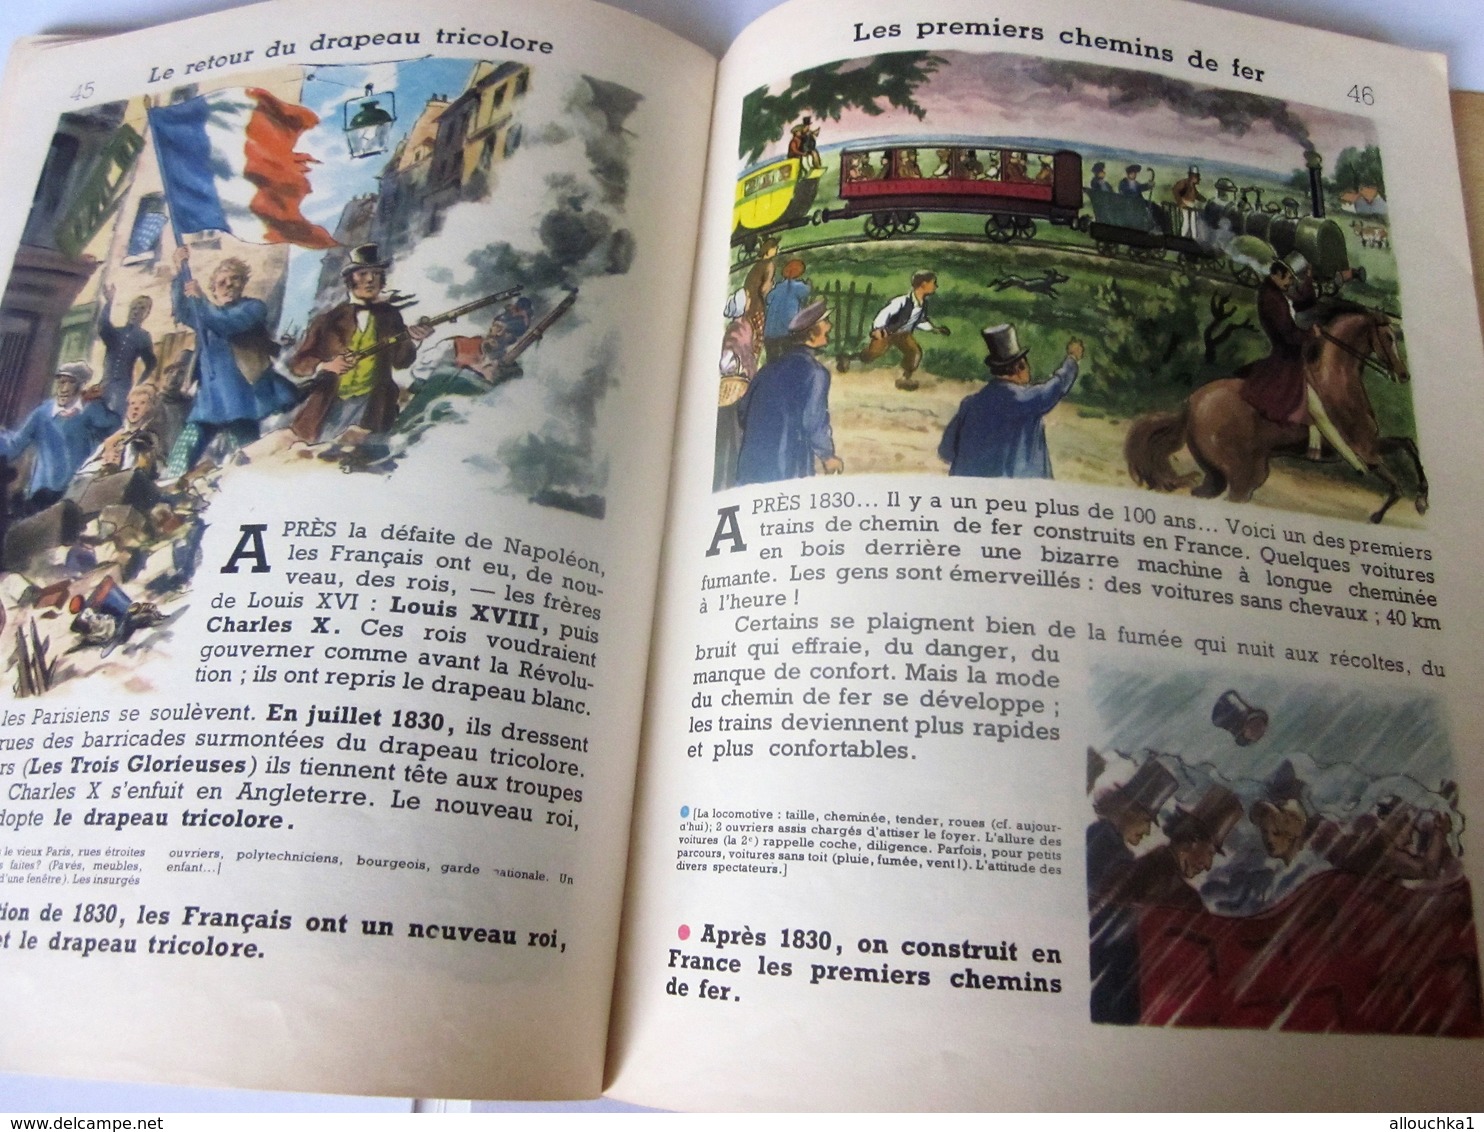 1958 PREMIÈRES IMAGES HISTOIRE DE FRANCE Livre d'école BD,Chromos Français Culture Histoire Librairie Delagrave illustra